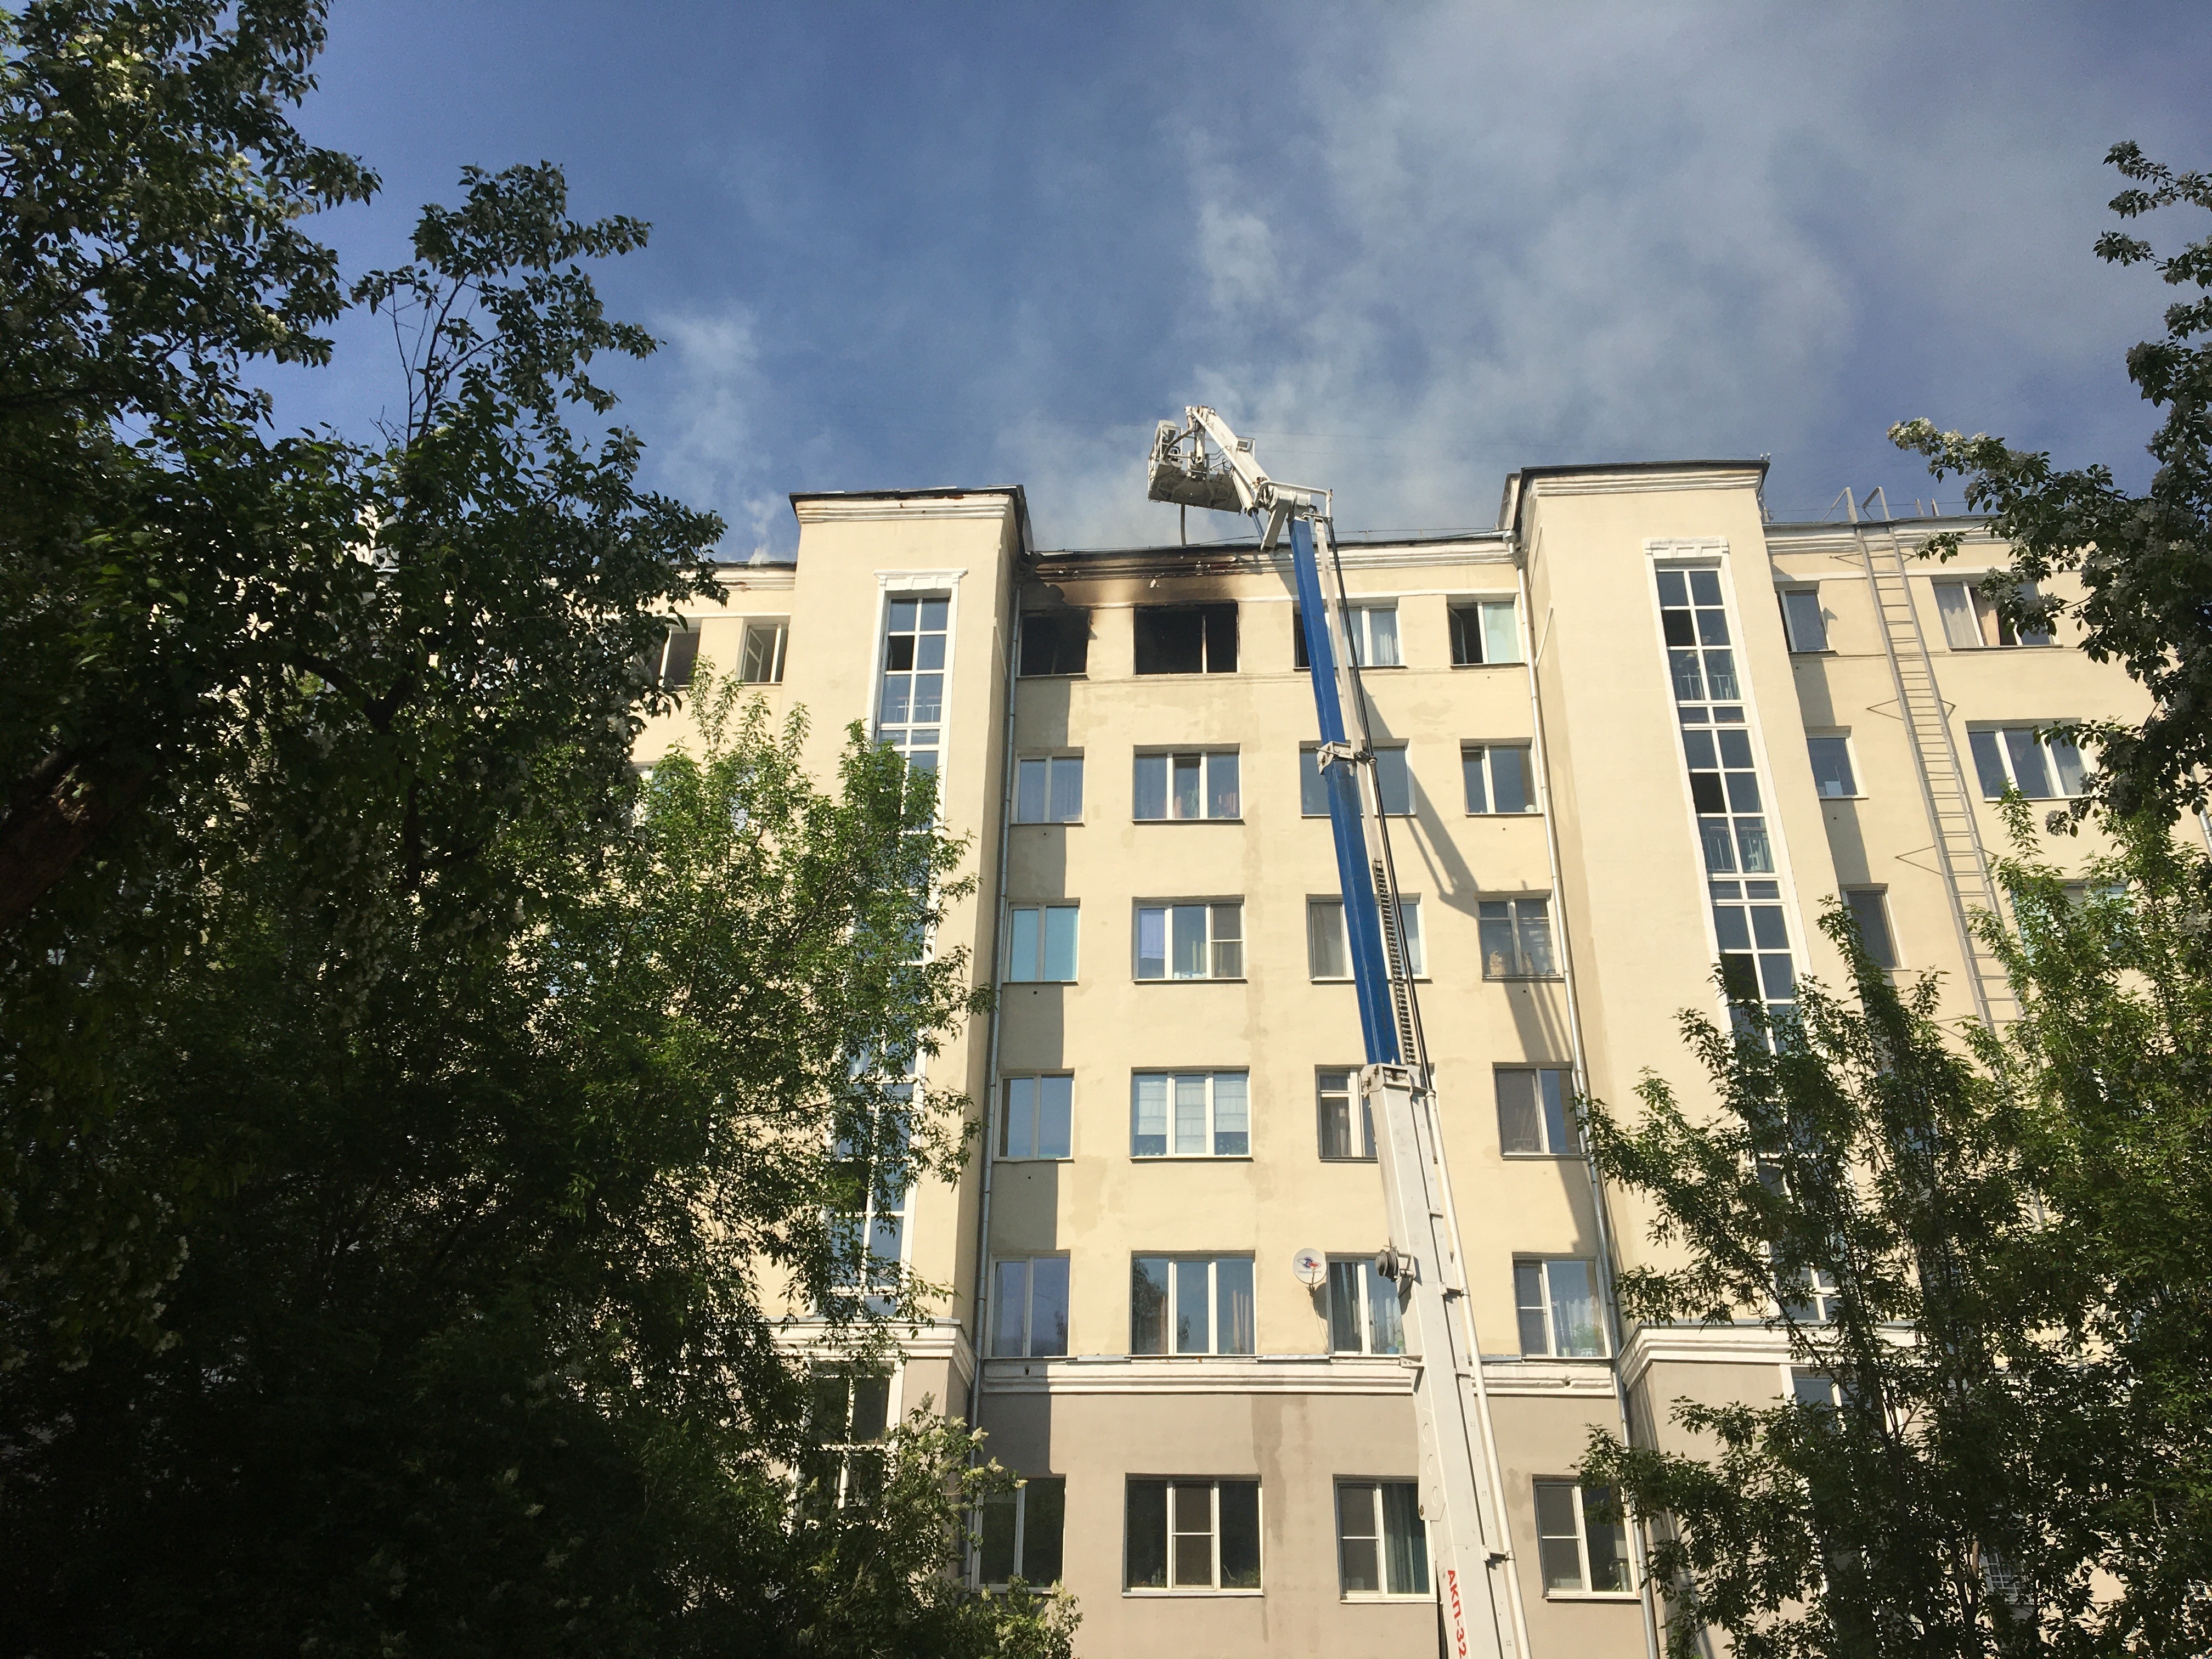 МЧС: пожар в многоэтажке в Екатеринбурге локализован - МЧС